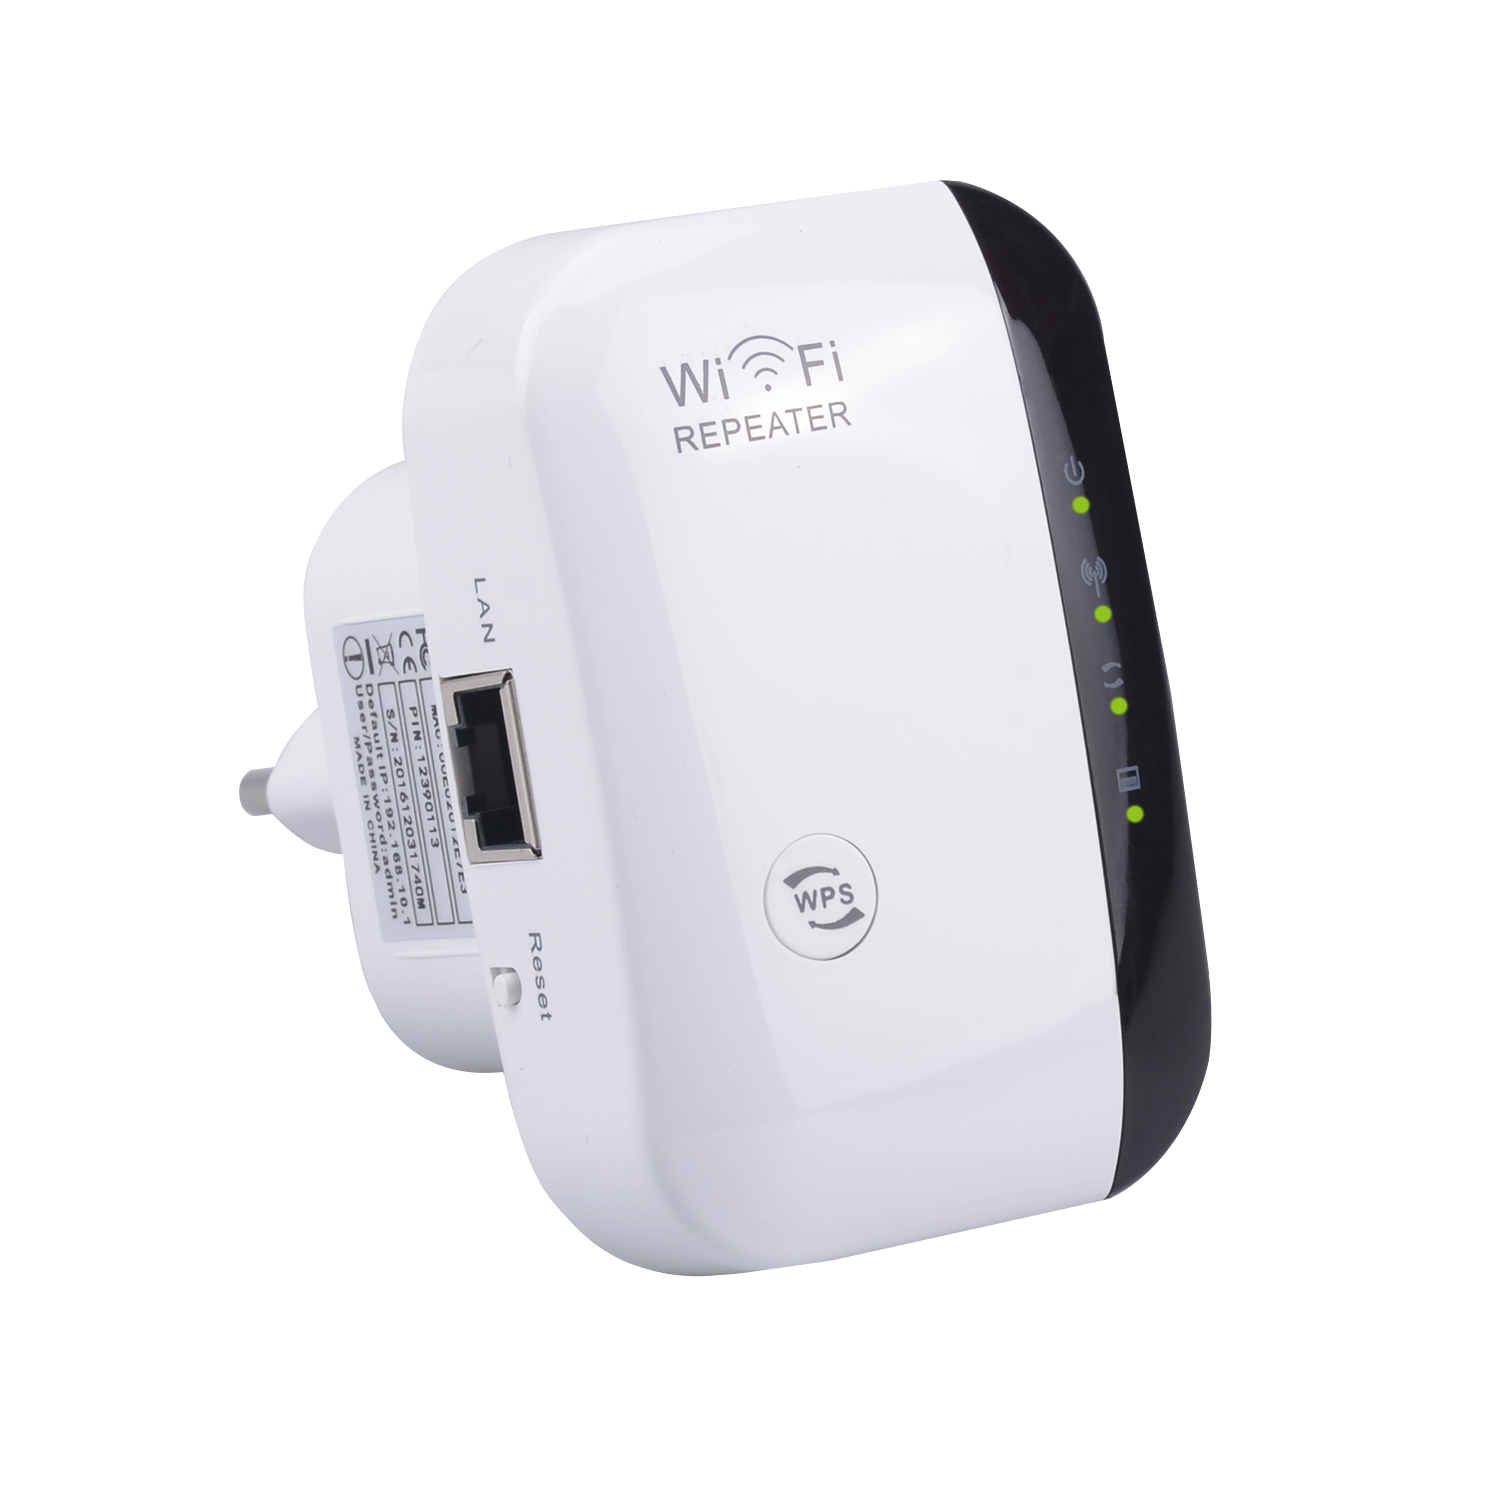 🔻🔻 Configuración repetidor WiFi universal con WPS 🔻 Facil en